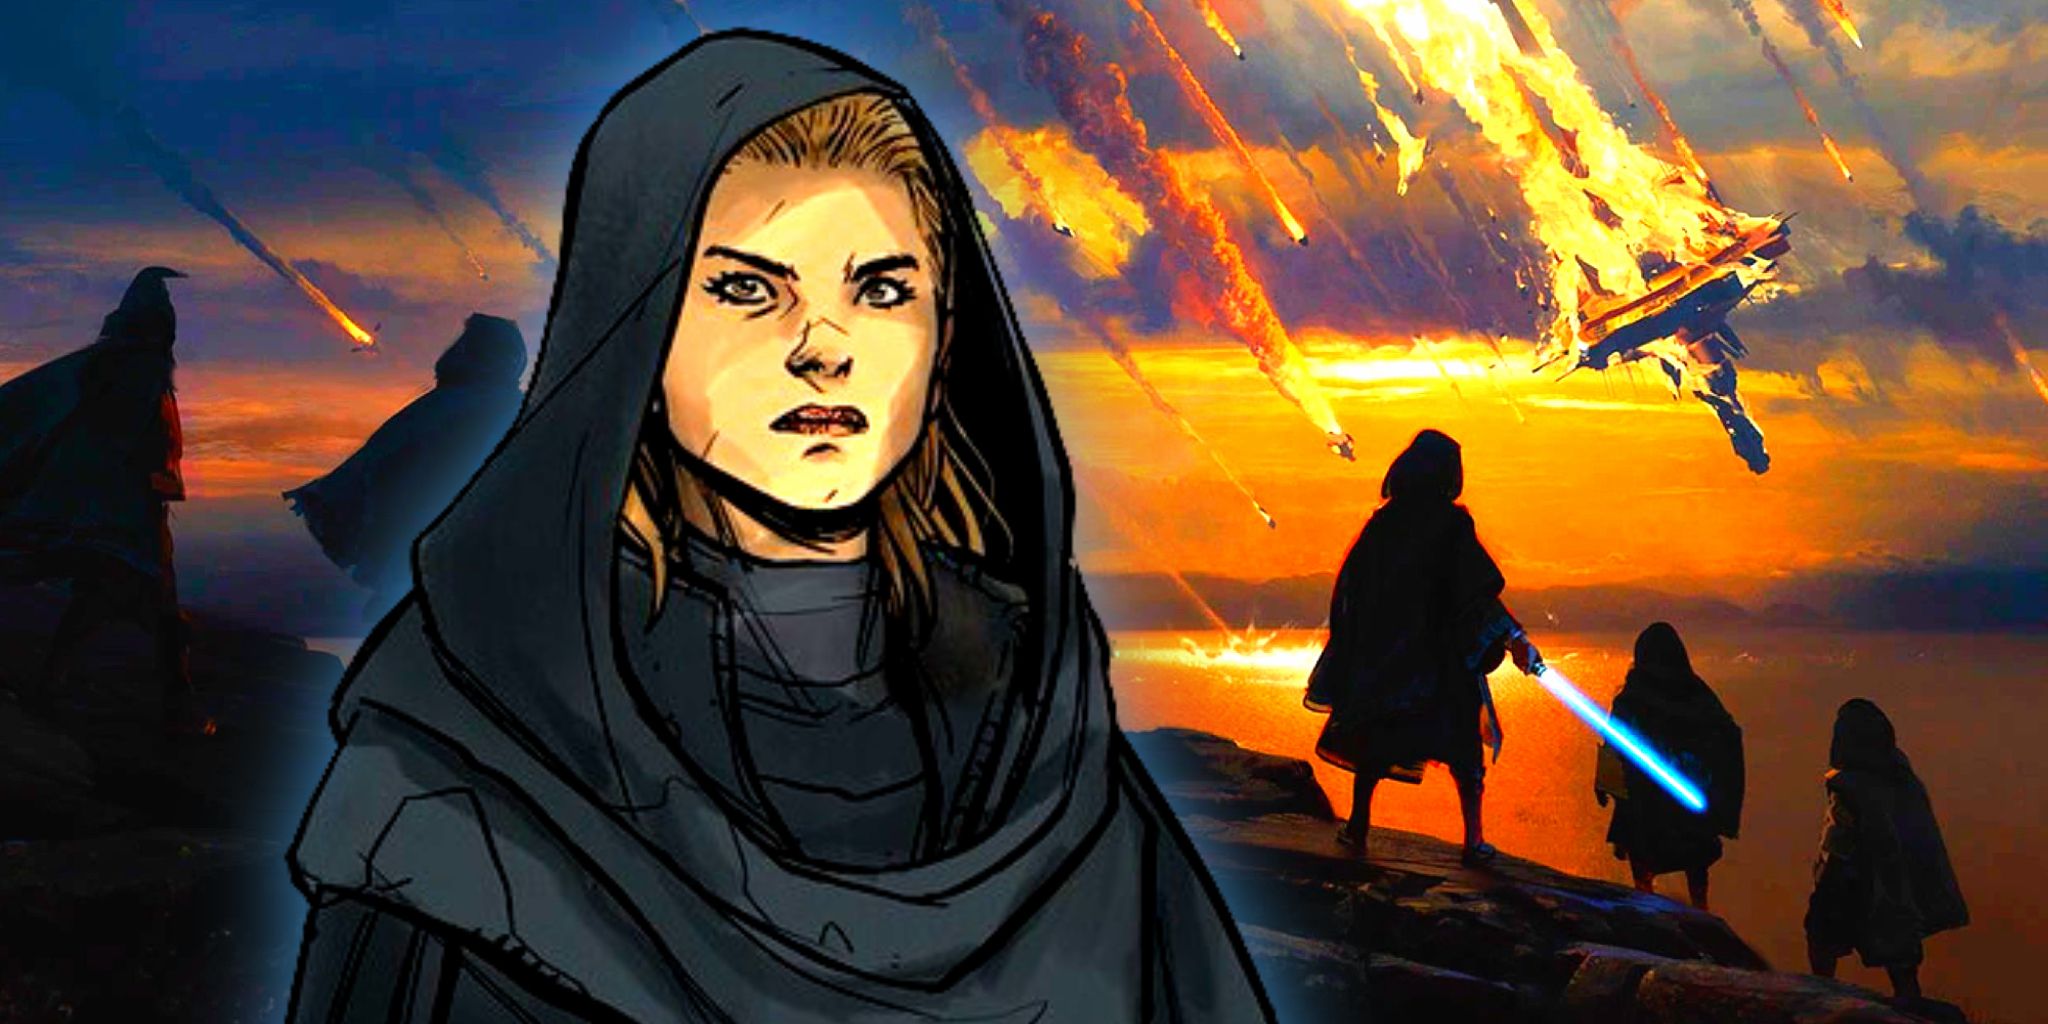 Impresionante arte conceptual de Star Wars muestra cómo la derrota cambia a los Jedi